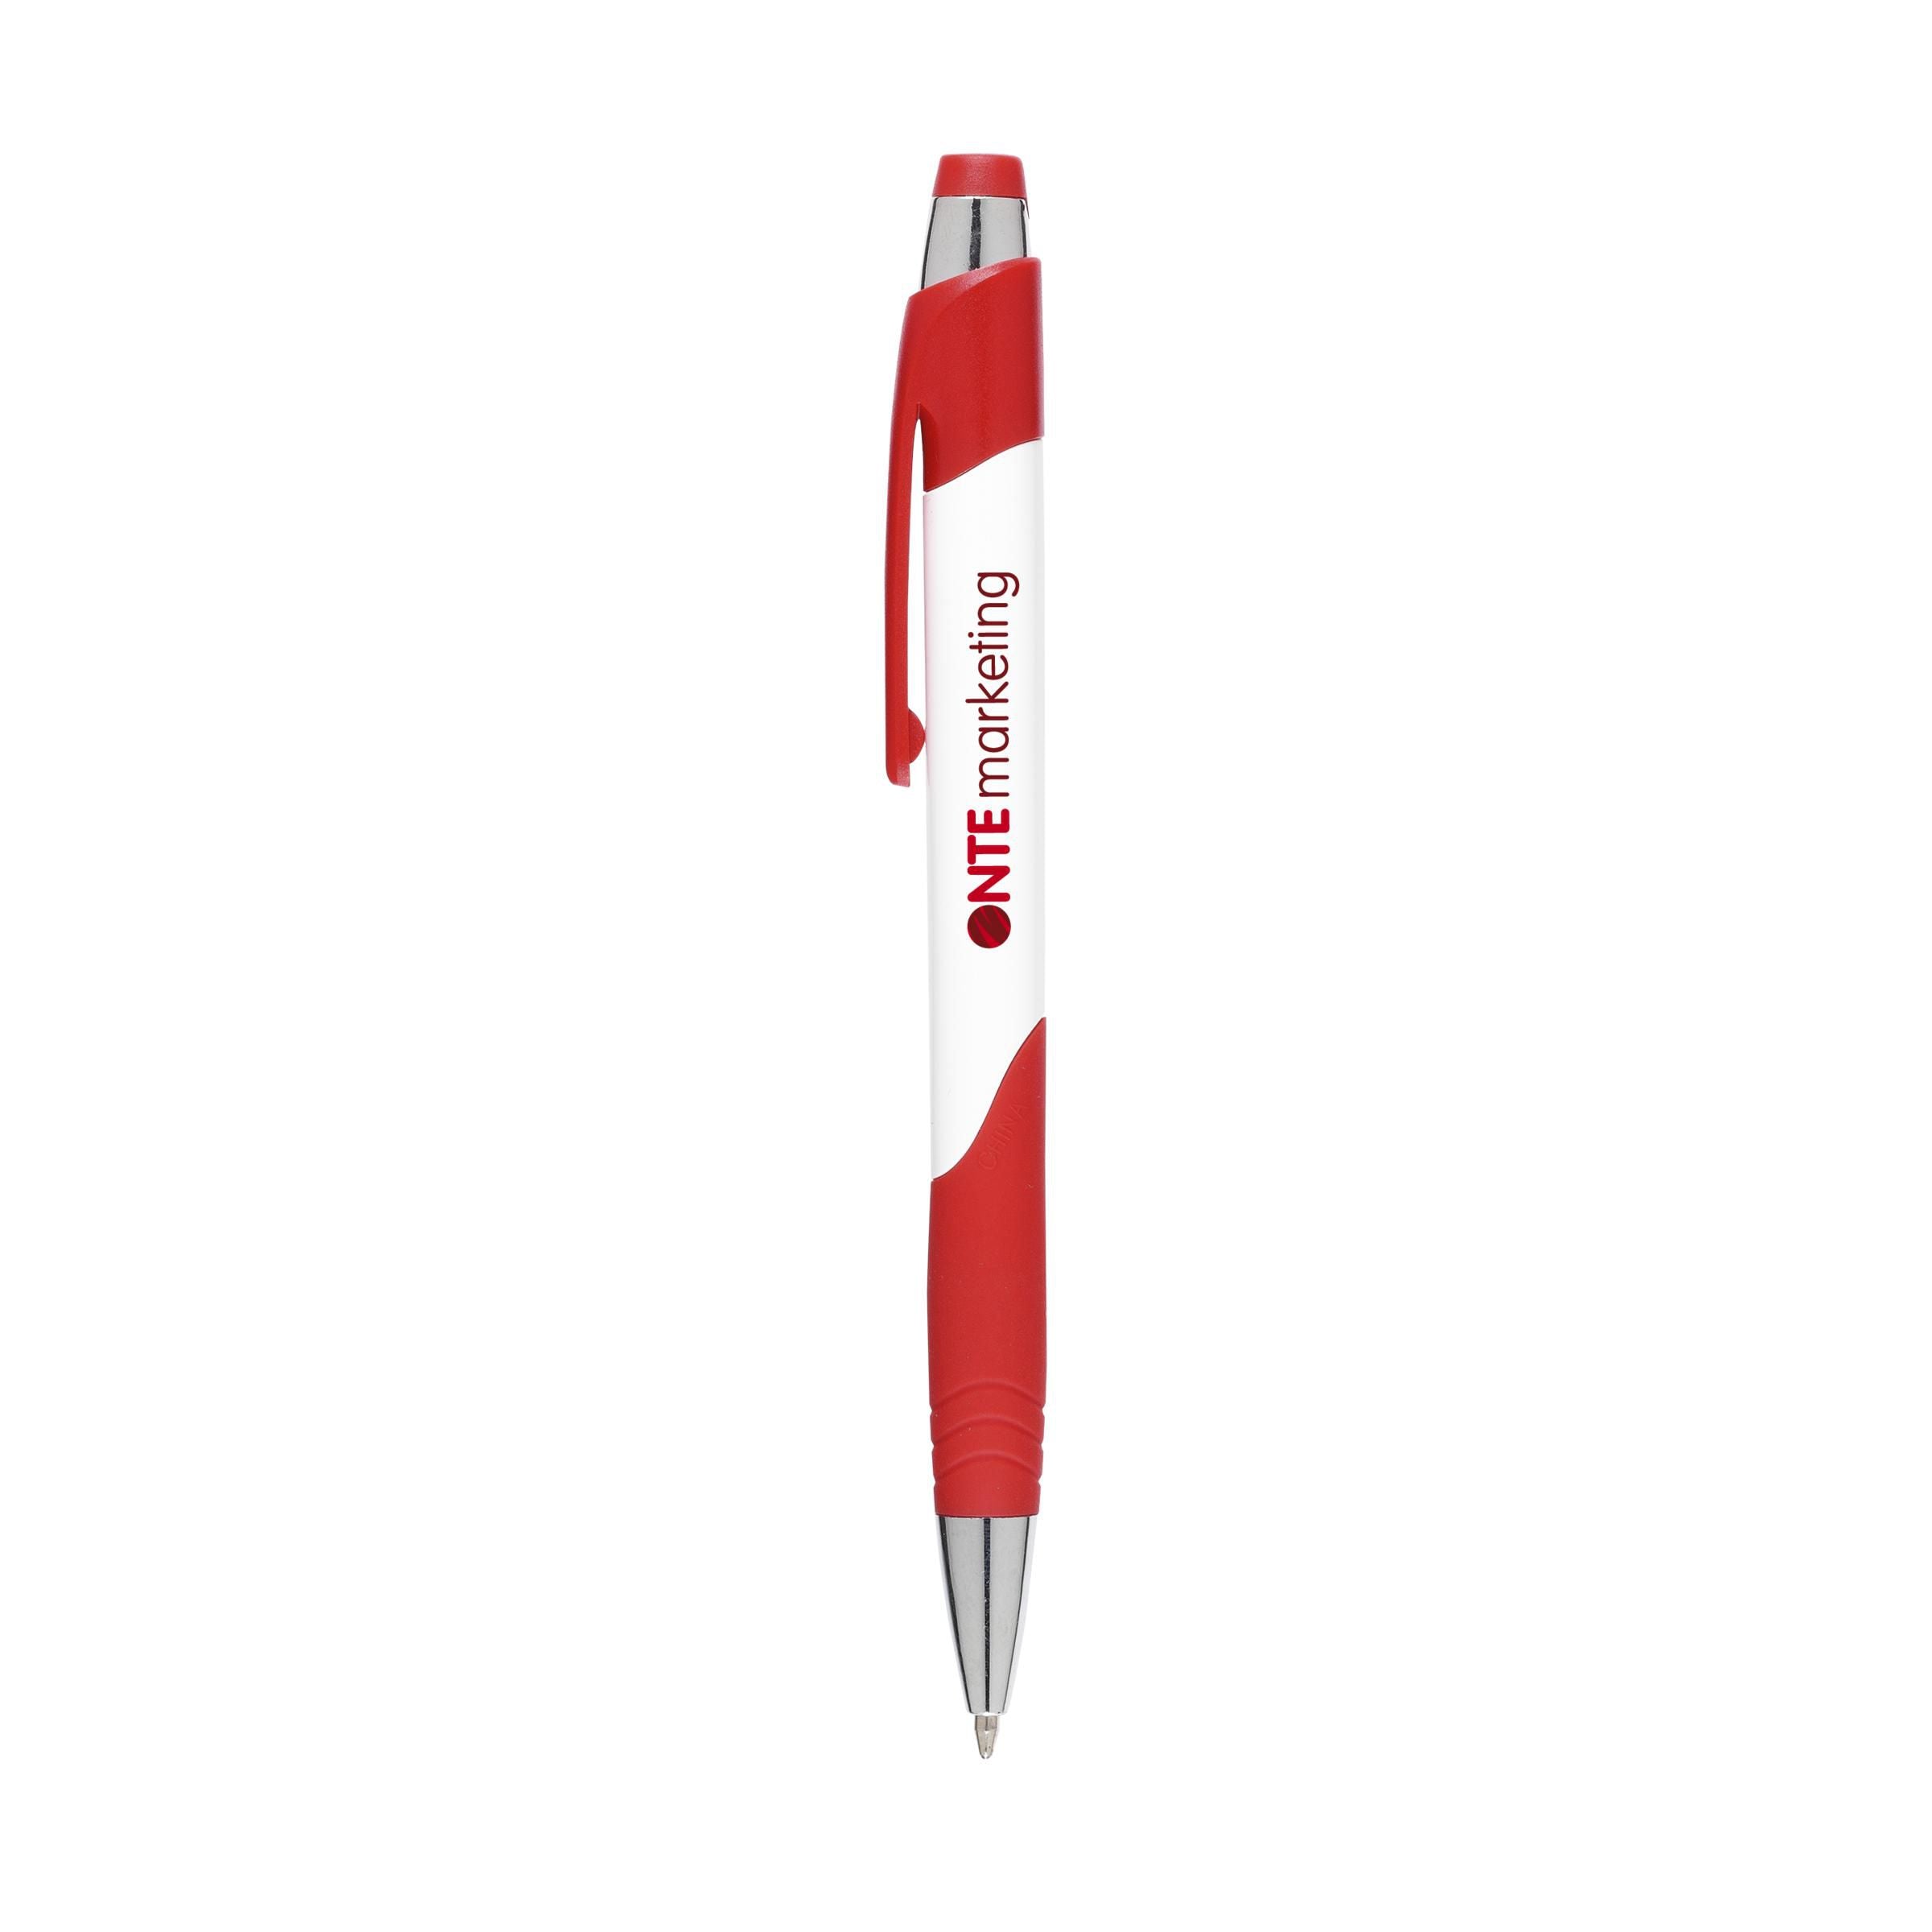 ColourBow pen